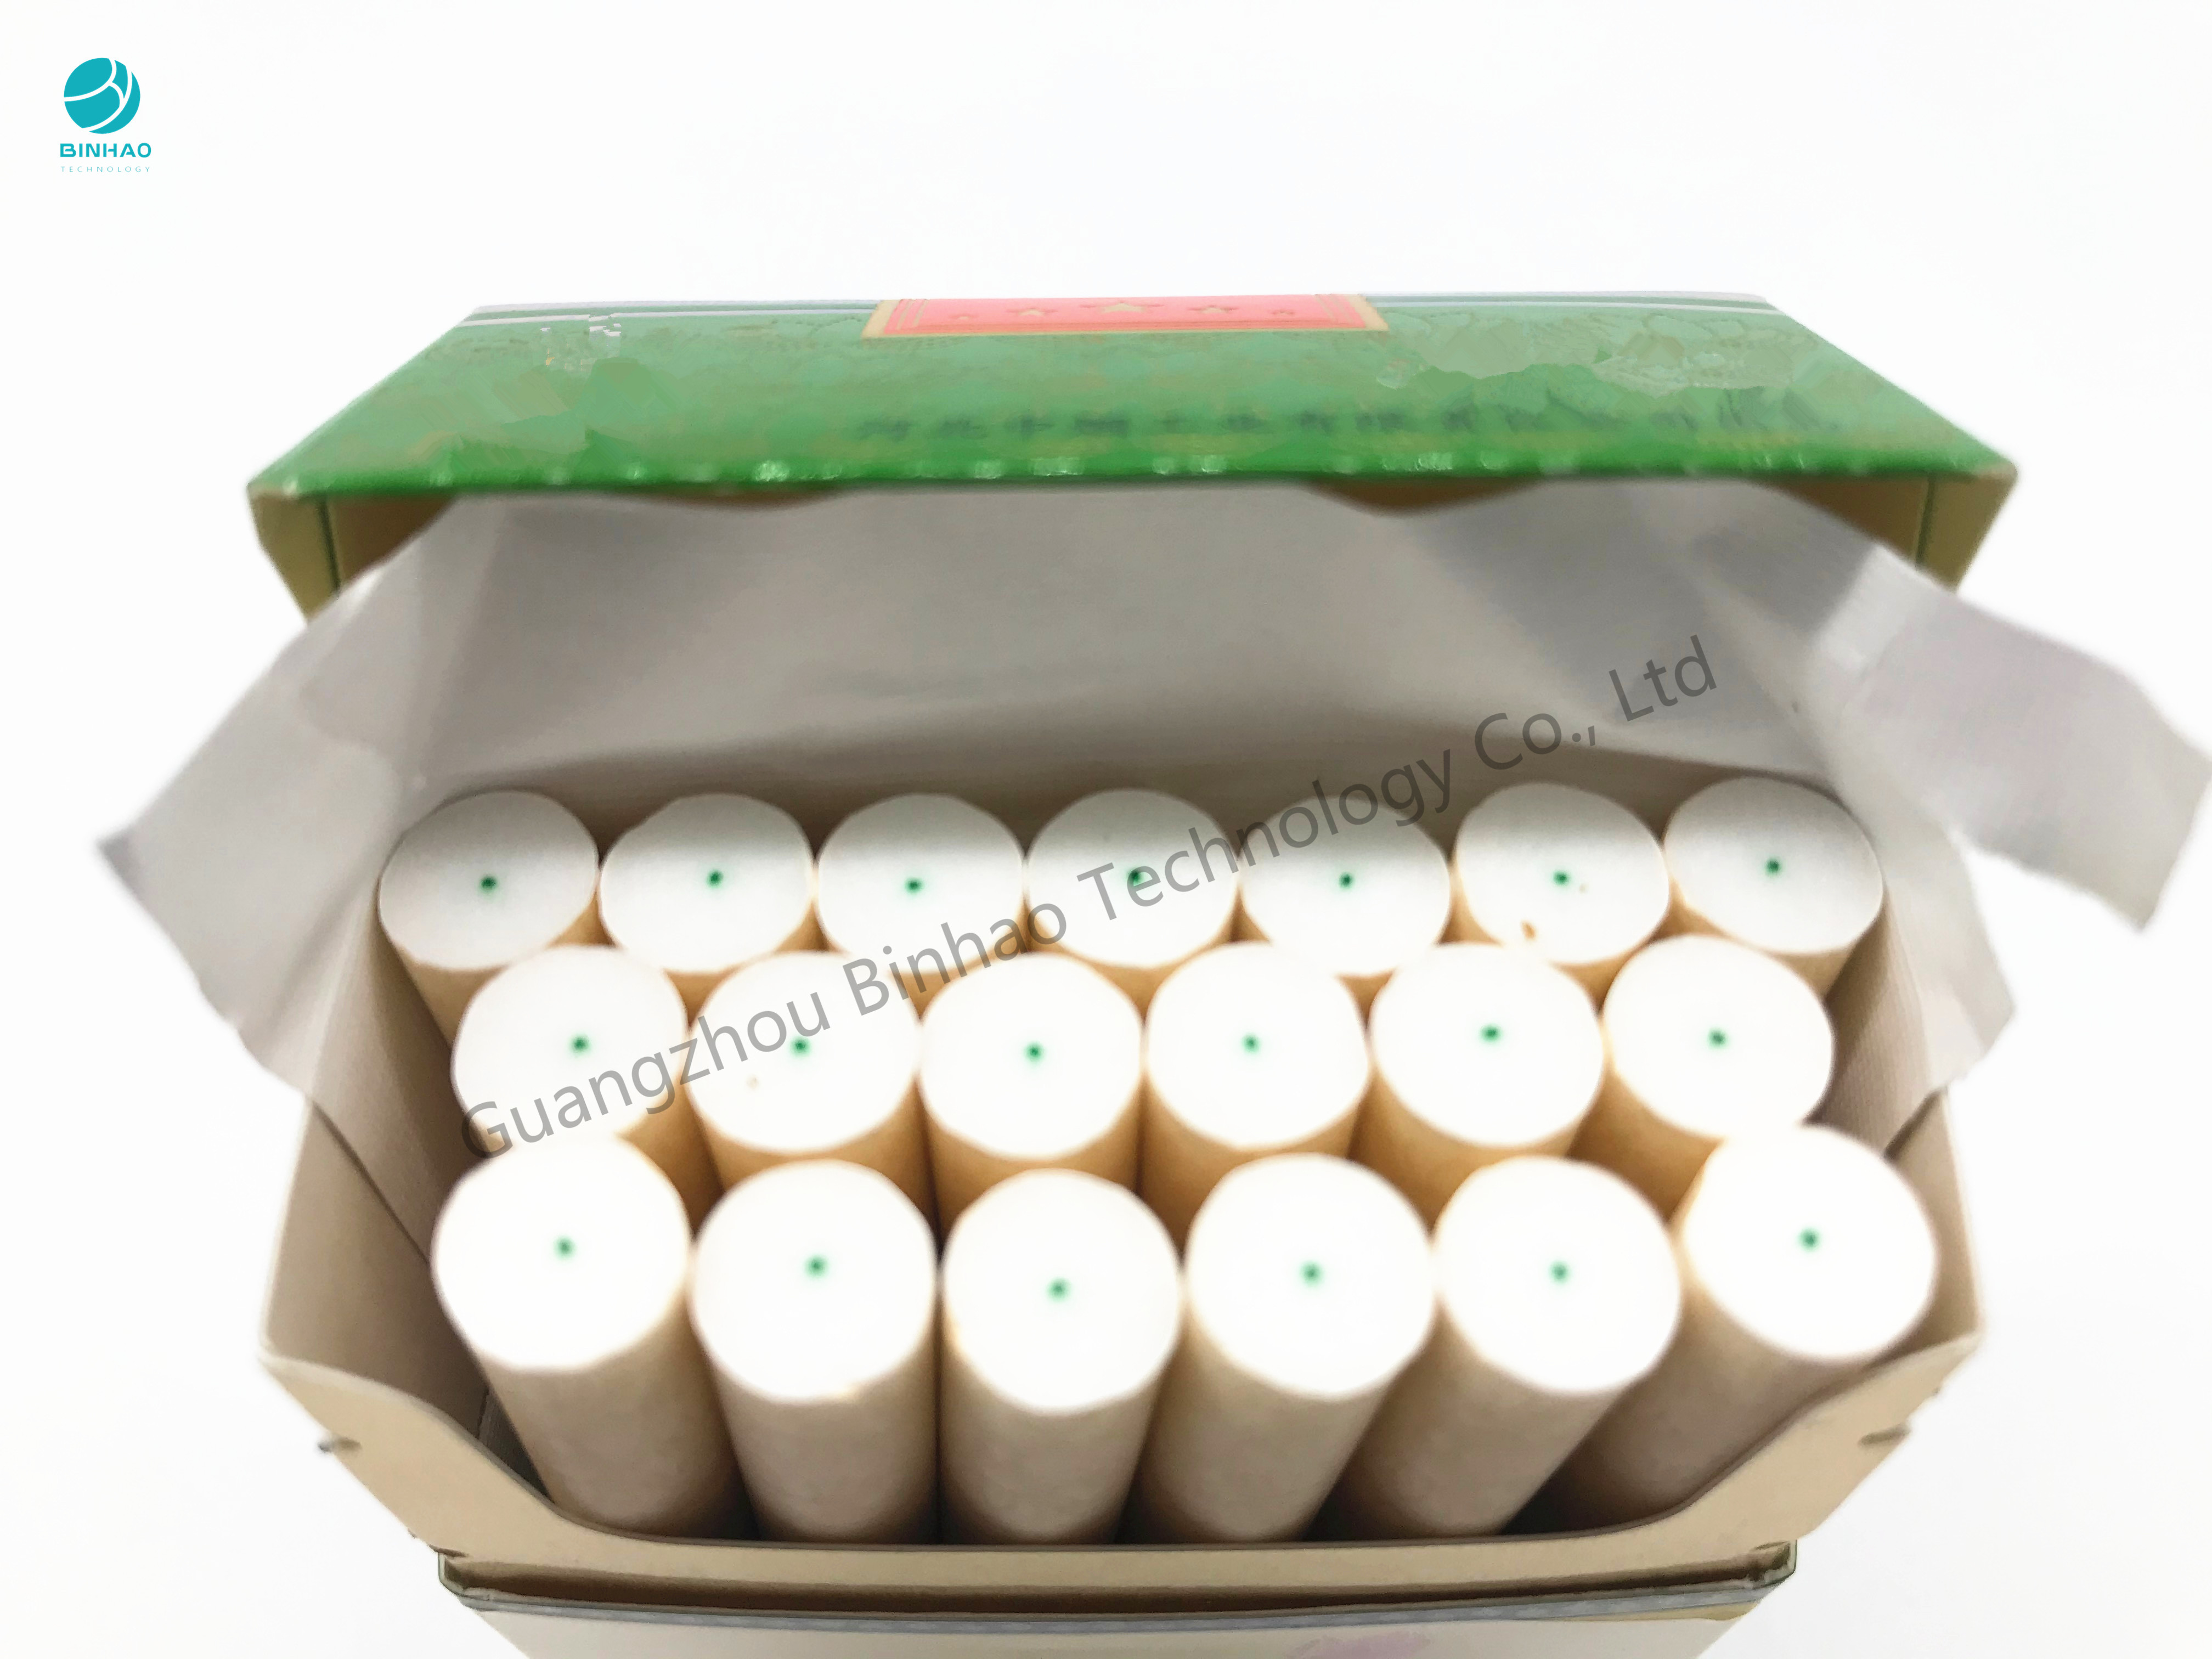 Utilisation mince de Rolls de fil de coton de vert de menthe de doux pour le filtre Rod et l'emballage de cigarette